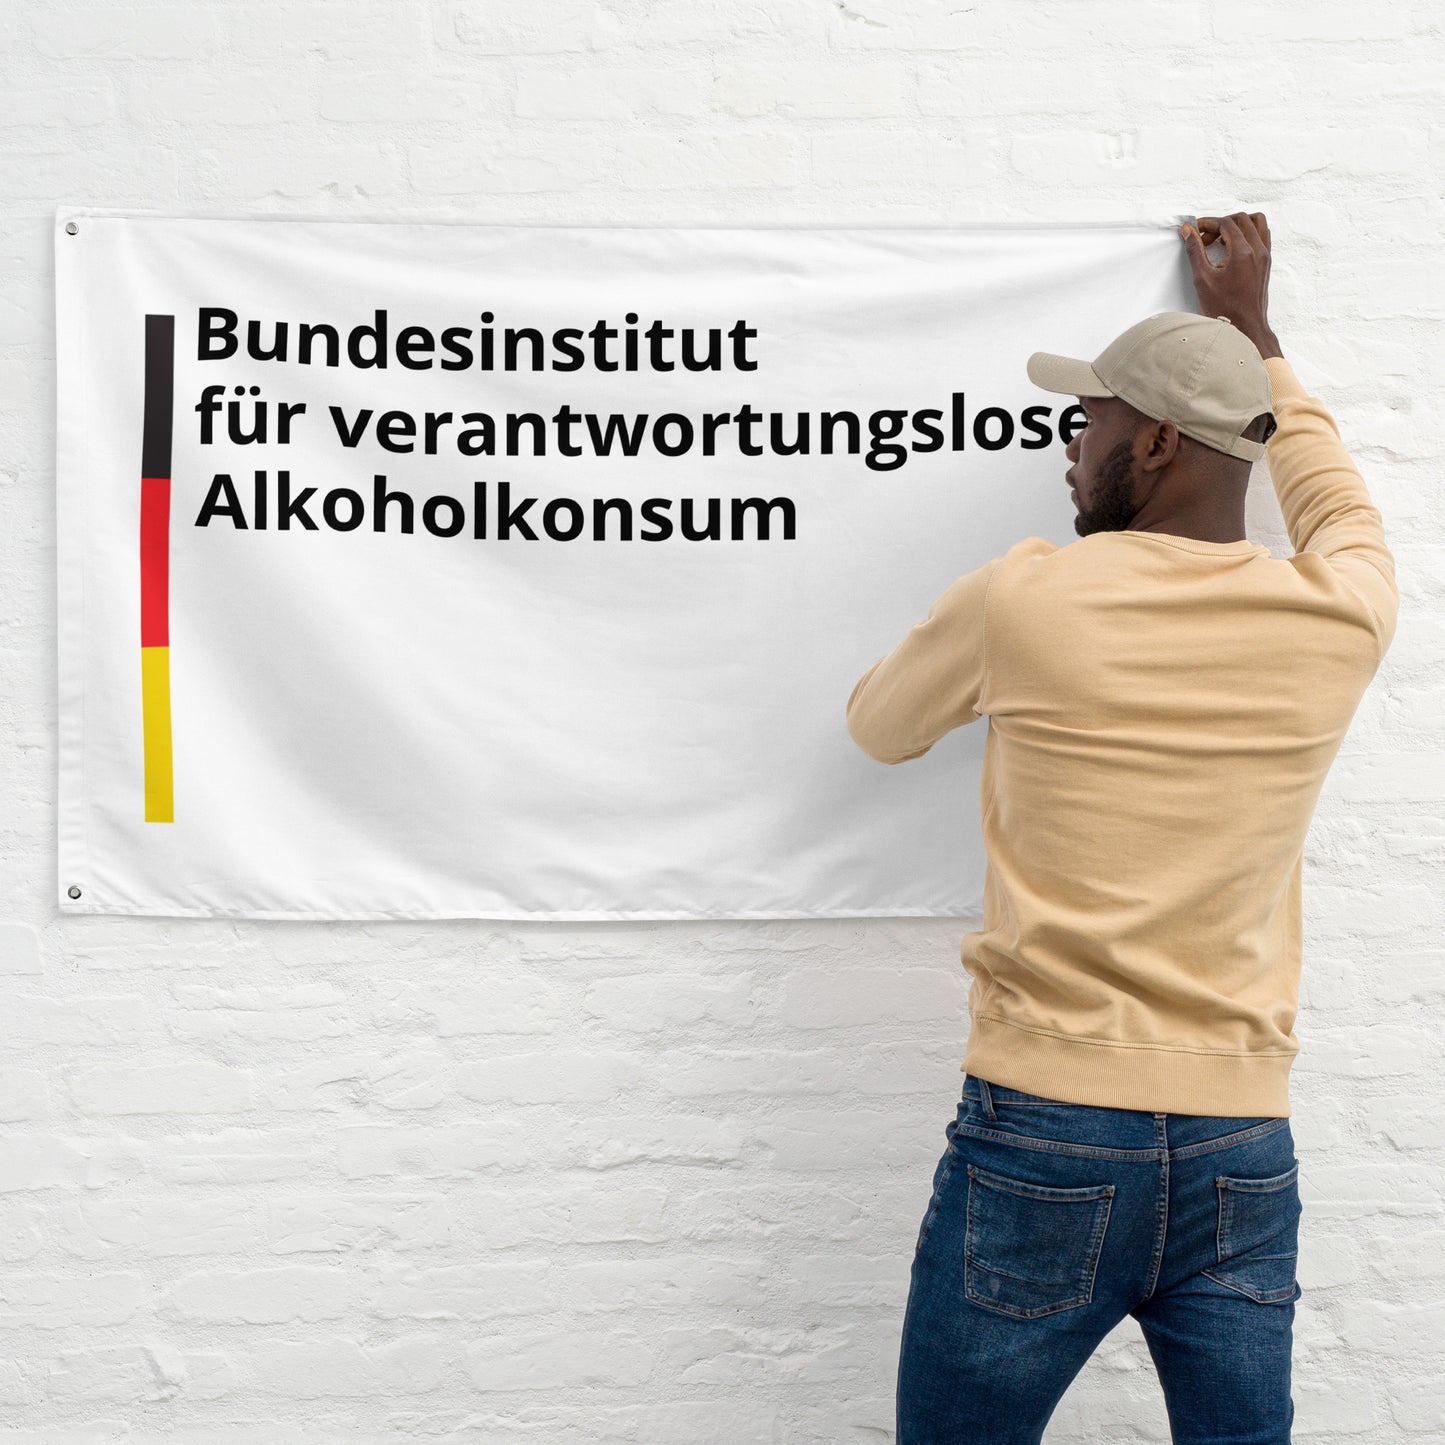 Bundesinstitut für verantwortungslosen Alkoholkonsum Flagge